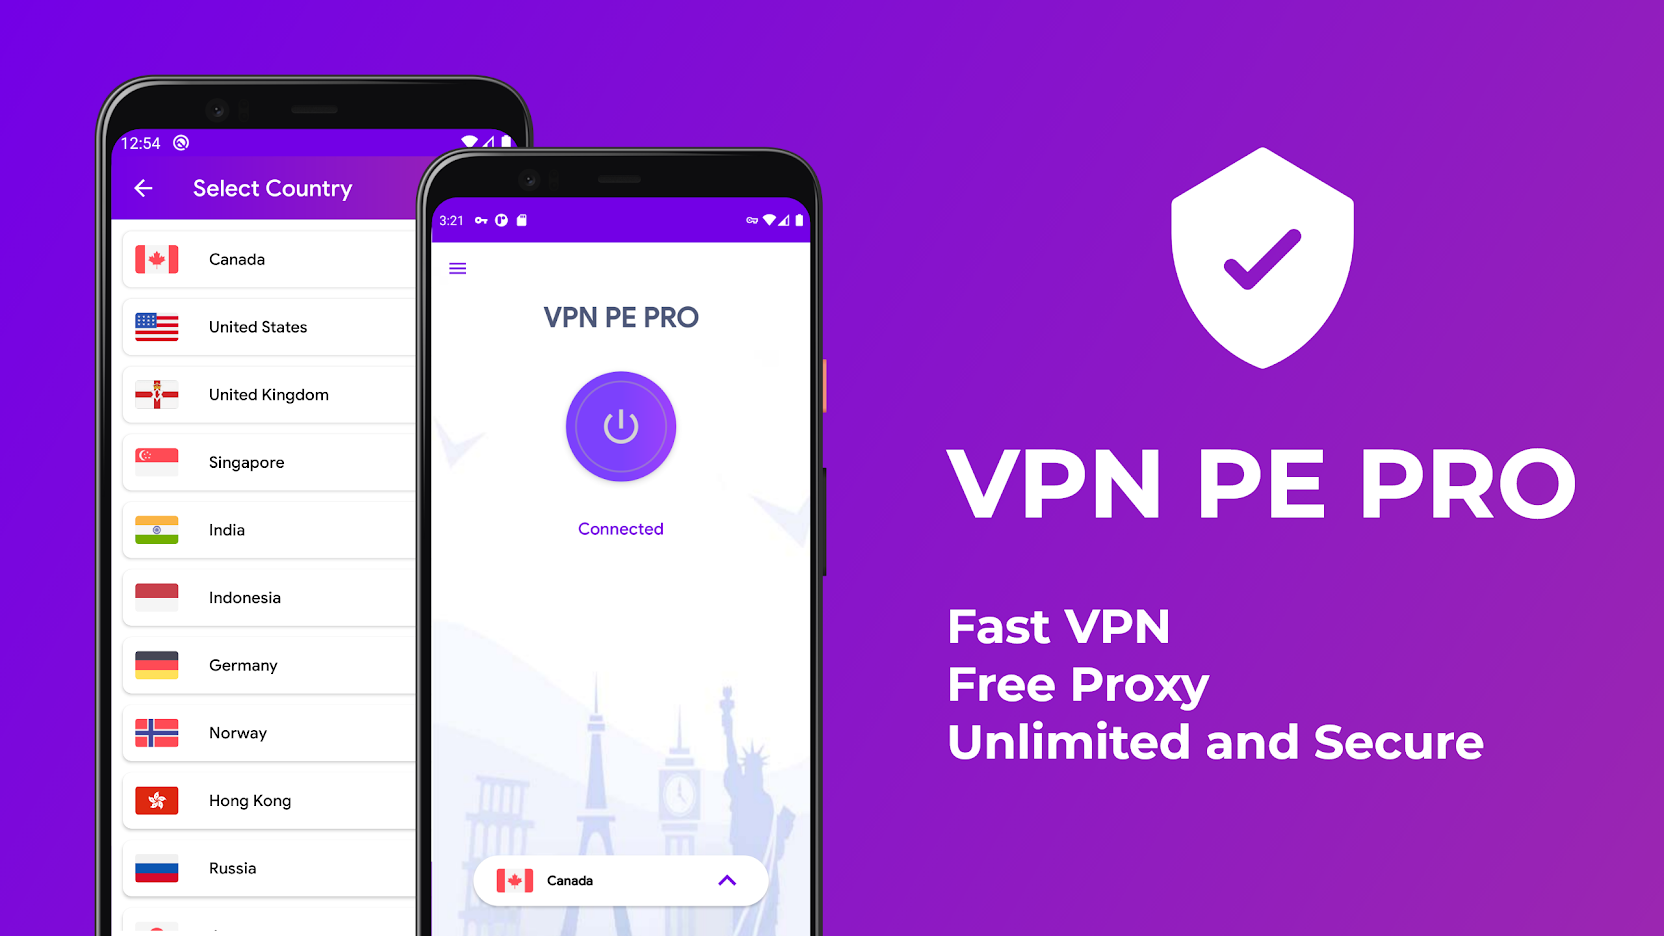 VPN PE PRO v1.5 (Paid) APK